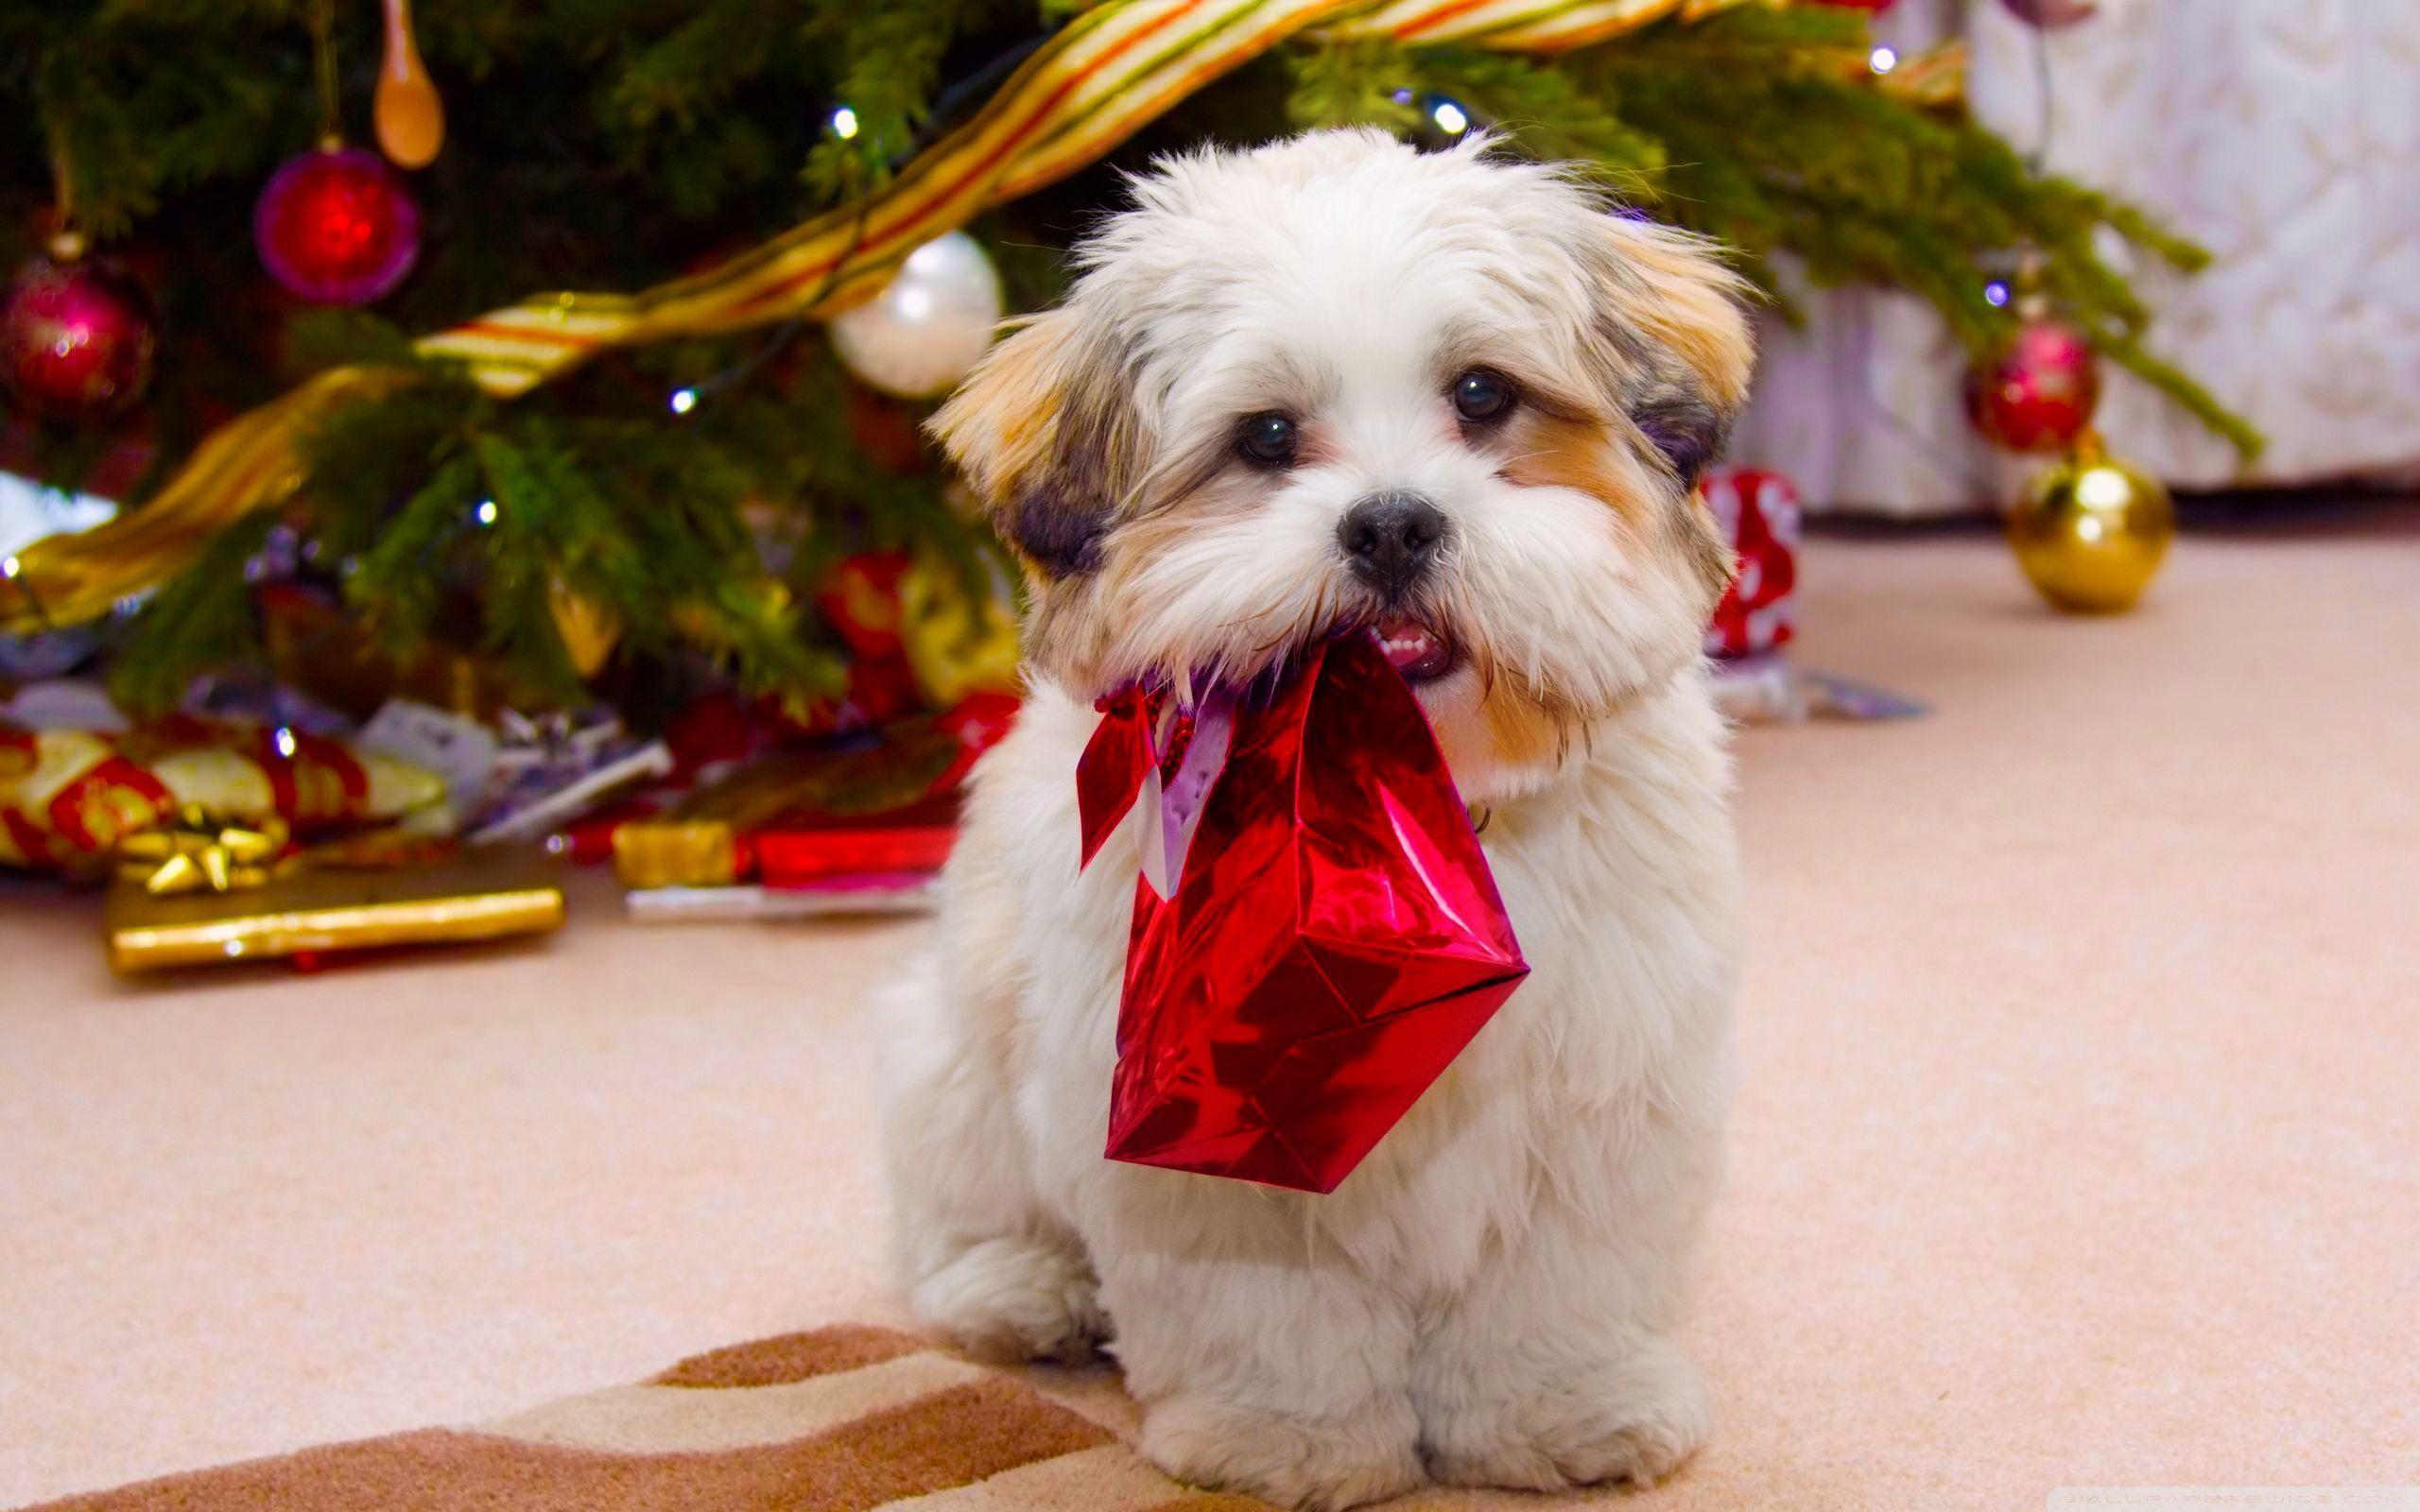 Cute Dog Christmas HD desktop wallpaper, High Definition